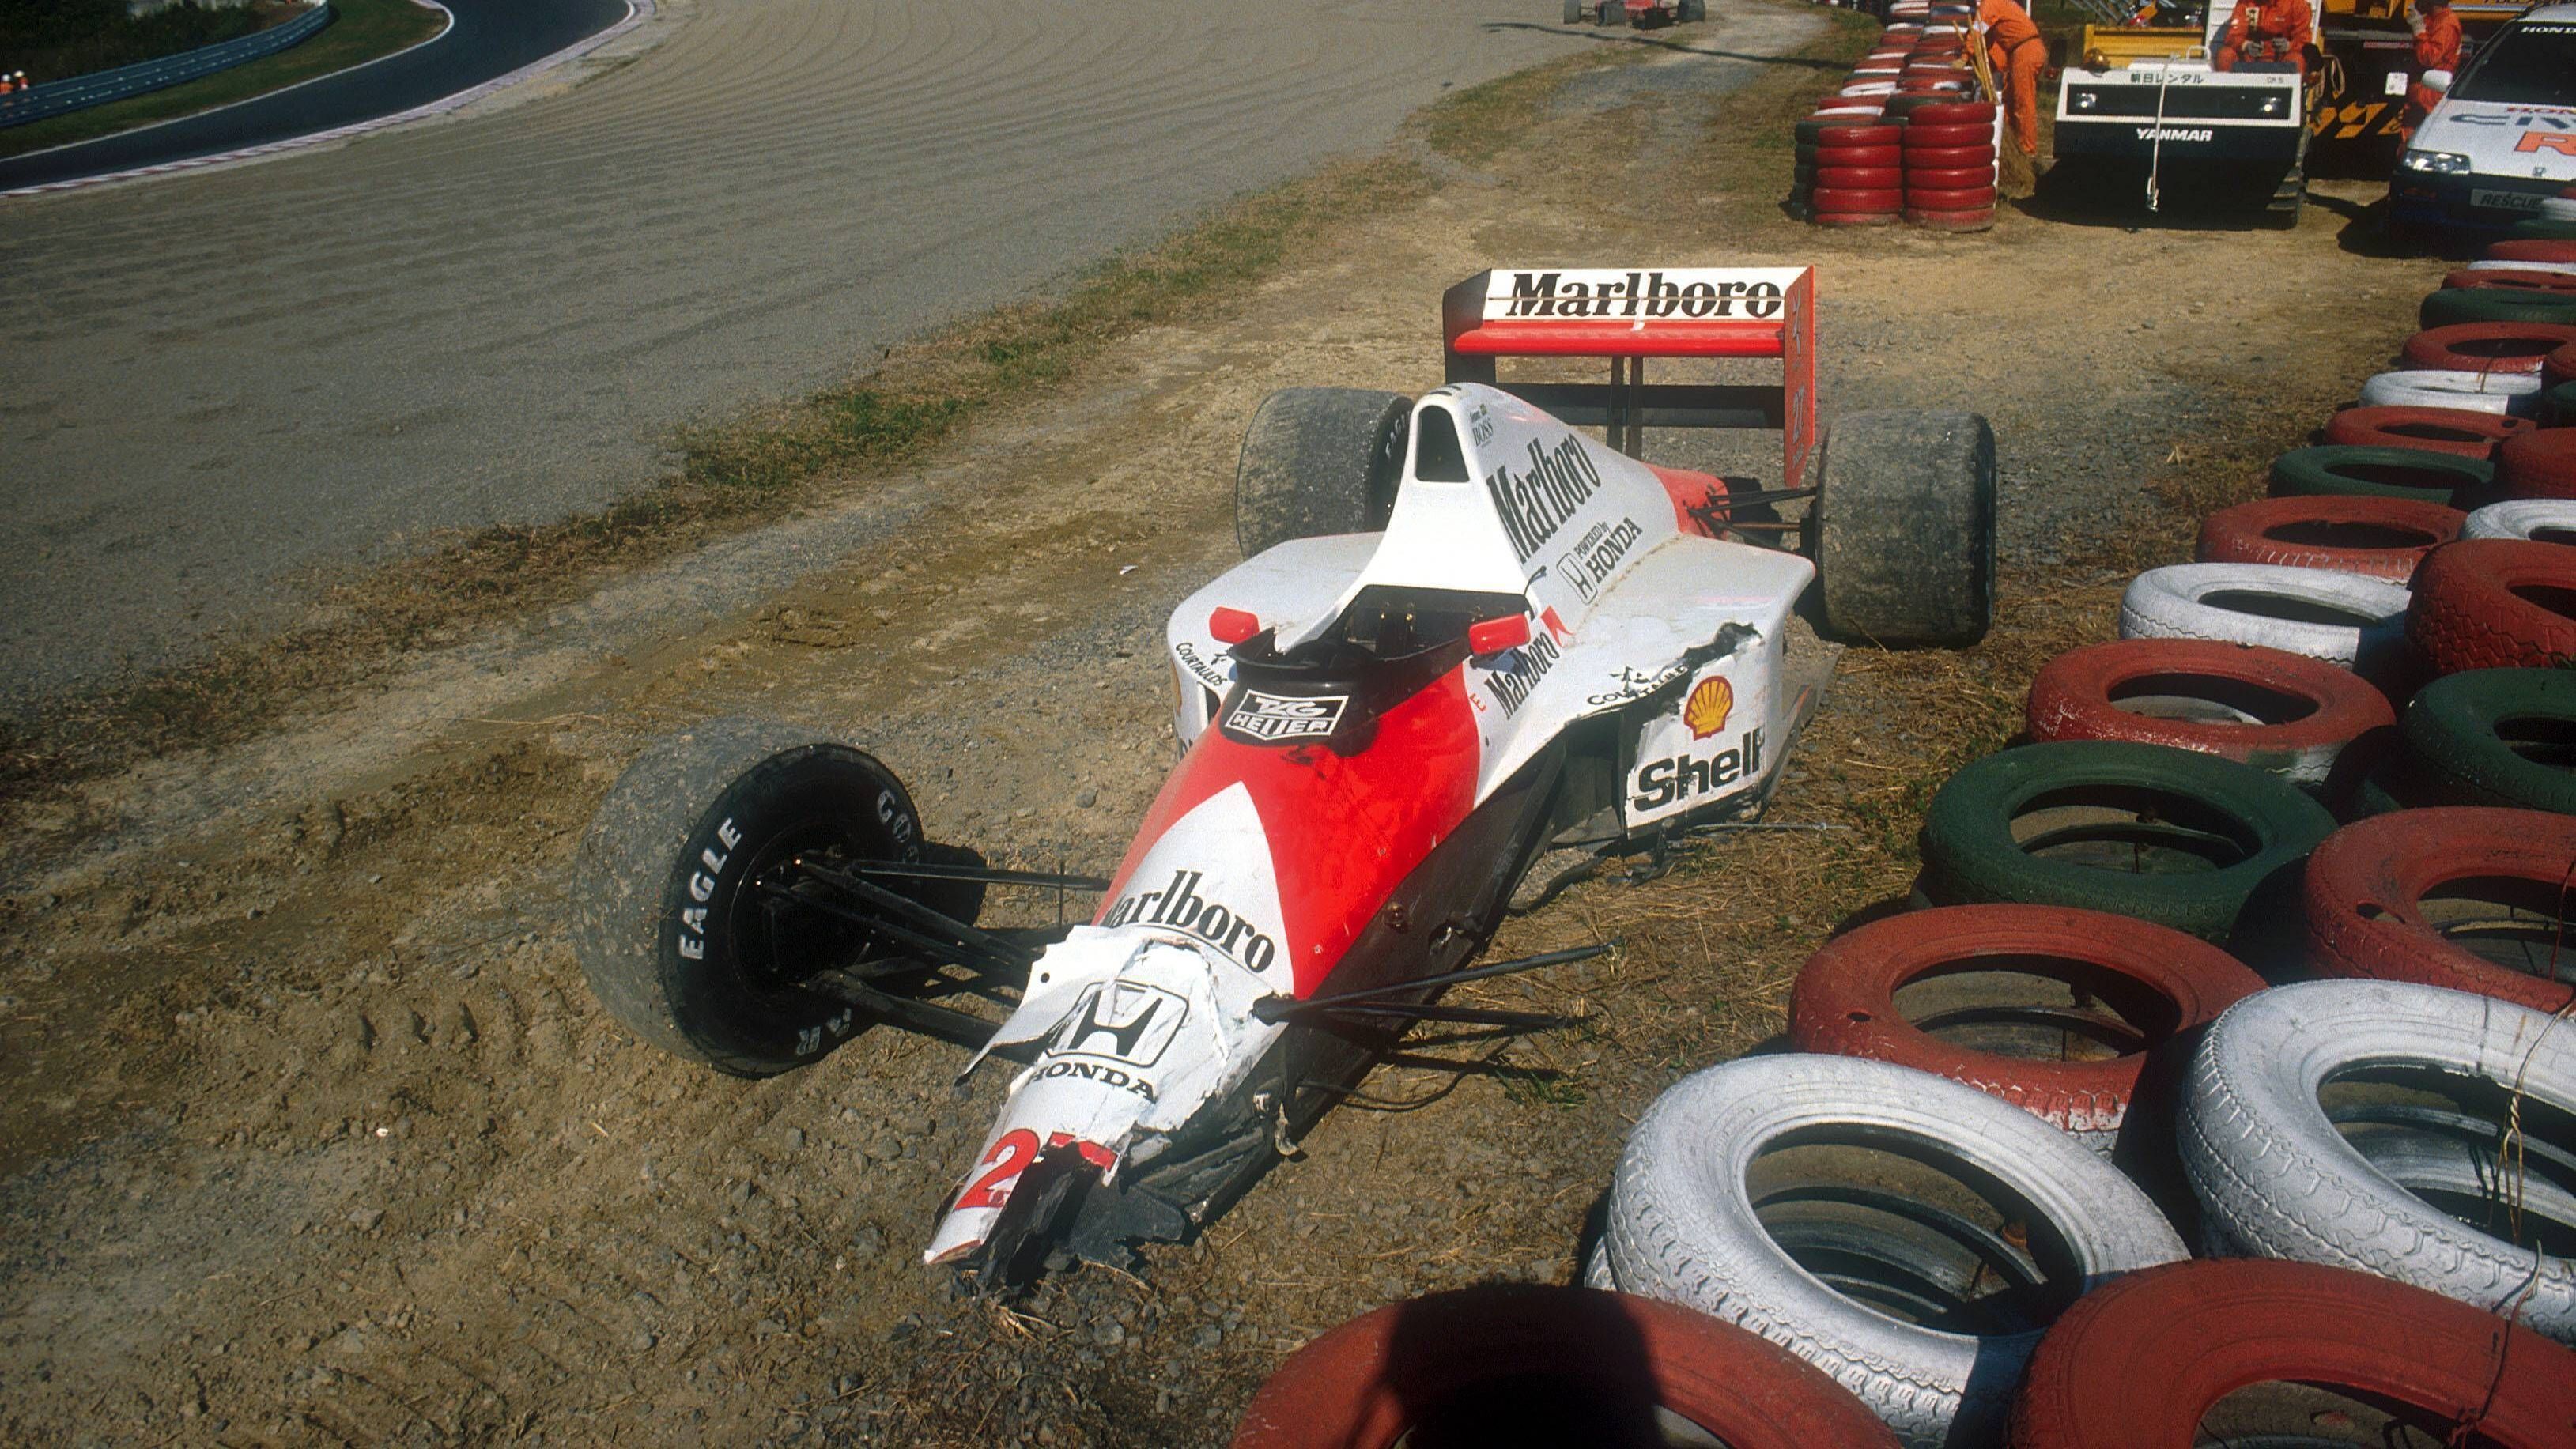 <strong>Alain Prost</strong><br>Diese Geschichte war geprägt von einer Feindschaft. Bei McLaren lieferten sich Ayrton Senna und Alain Prost erbitterte Kämpfe. 1990 verließ Prost das Team in Richtung Ferrari, was er vorzeitig angekündigt hatte. Beide Fahrer sprachen danach nicht mehr miteinander. In Japan kollidierten beide. Prost stieg aus, Senna gewann – wurde aber  disqualifiziert, worauf Prost Weltmeister wurde.